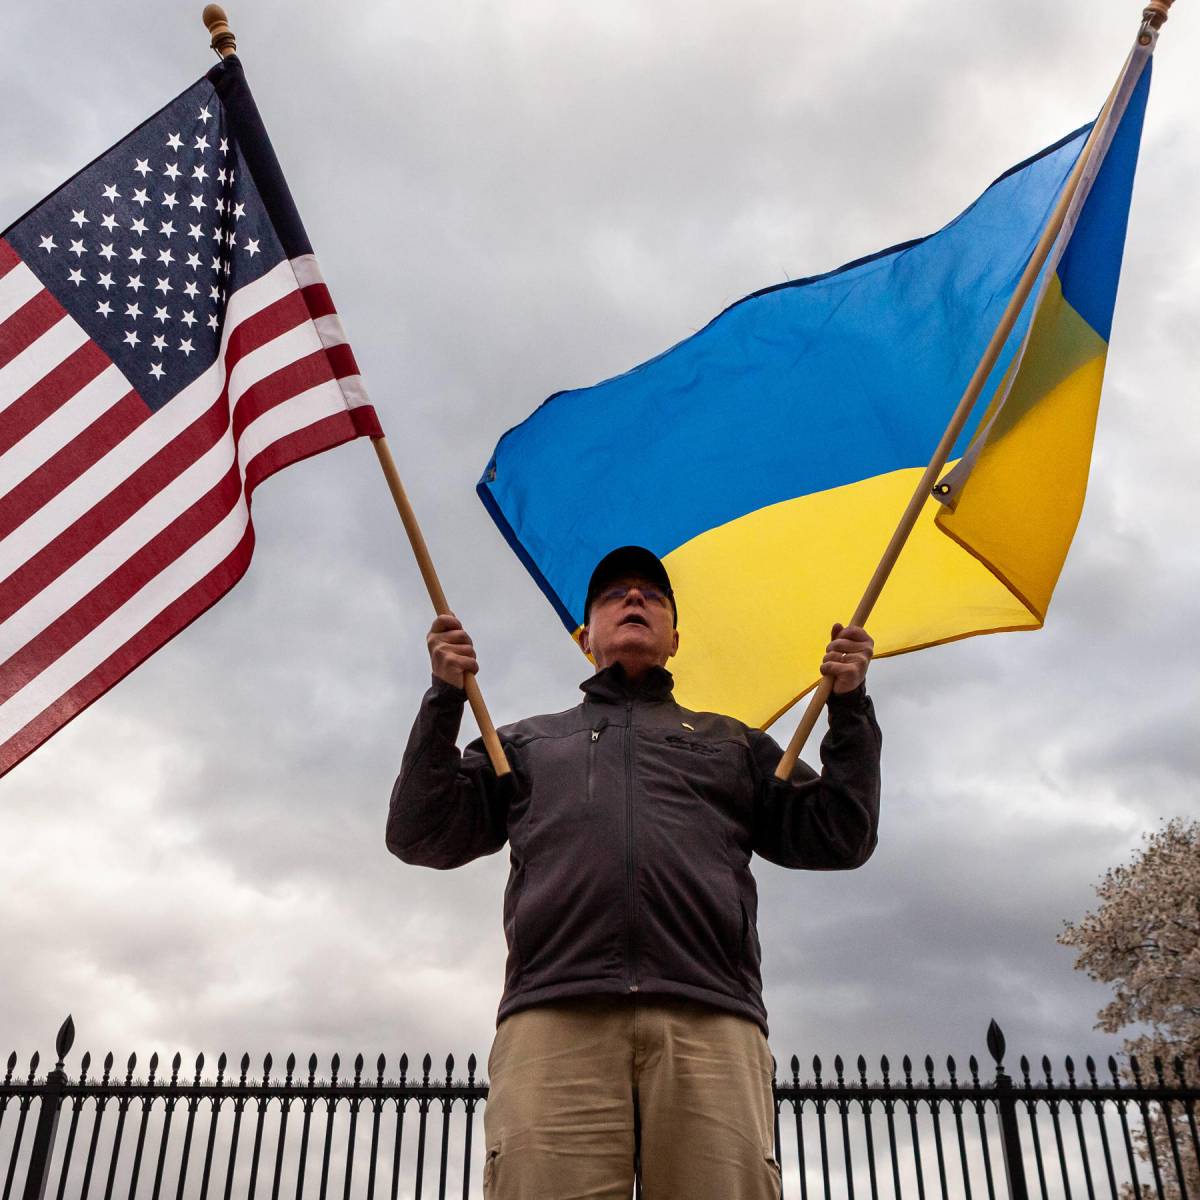 NI: США должны принудить Киев к миру из-за растущих рисков ядерной войны